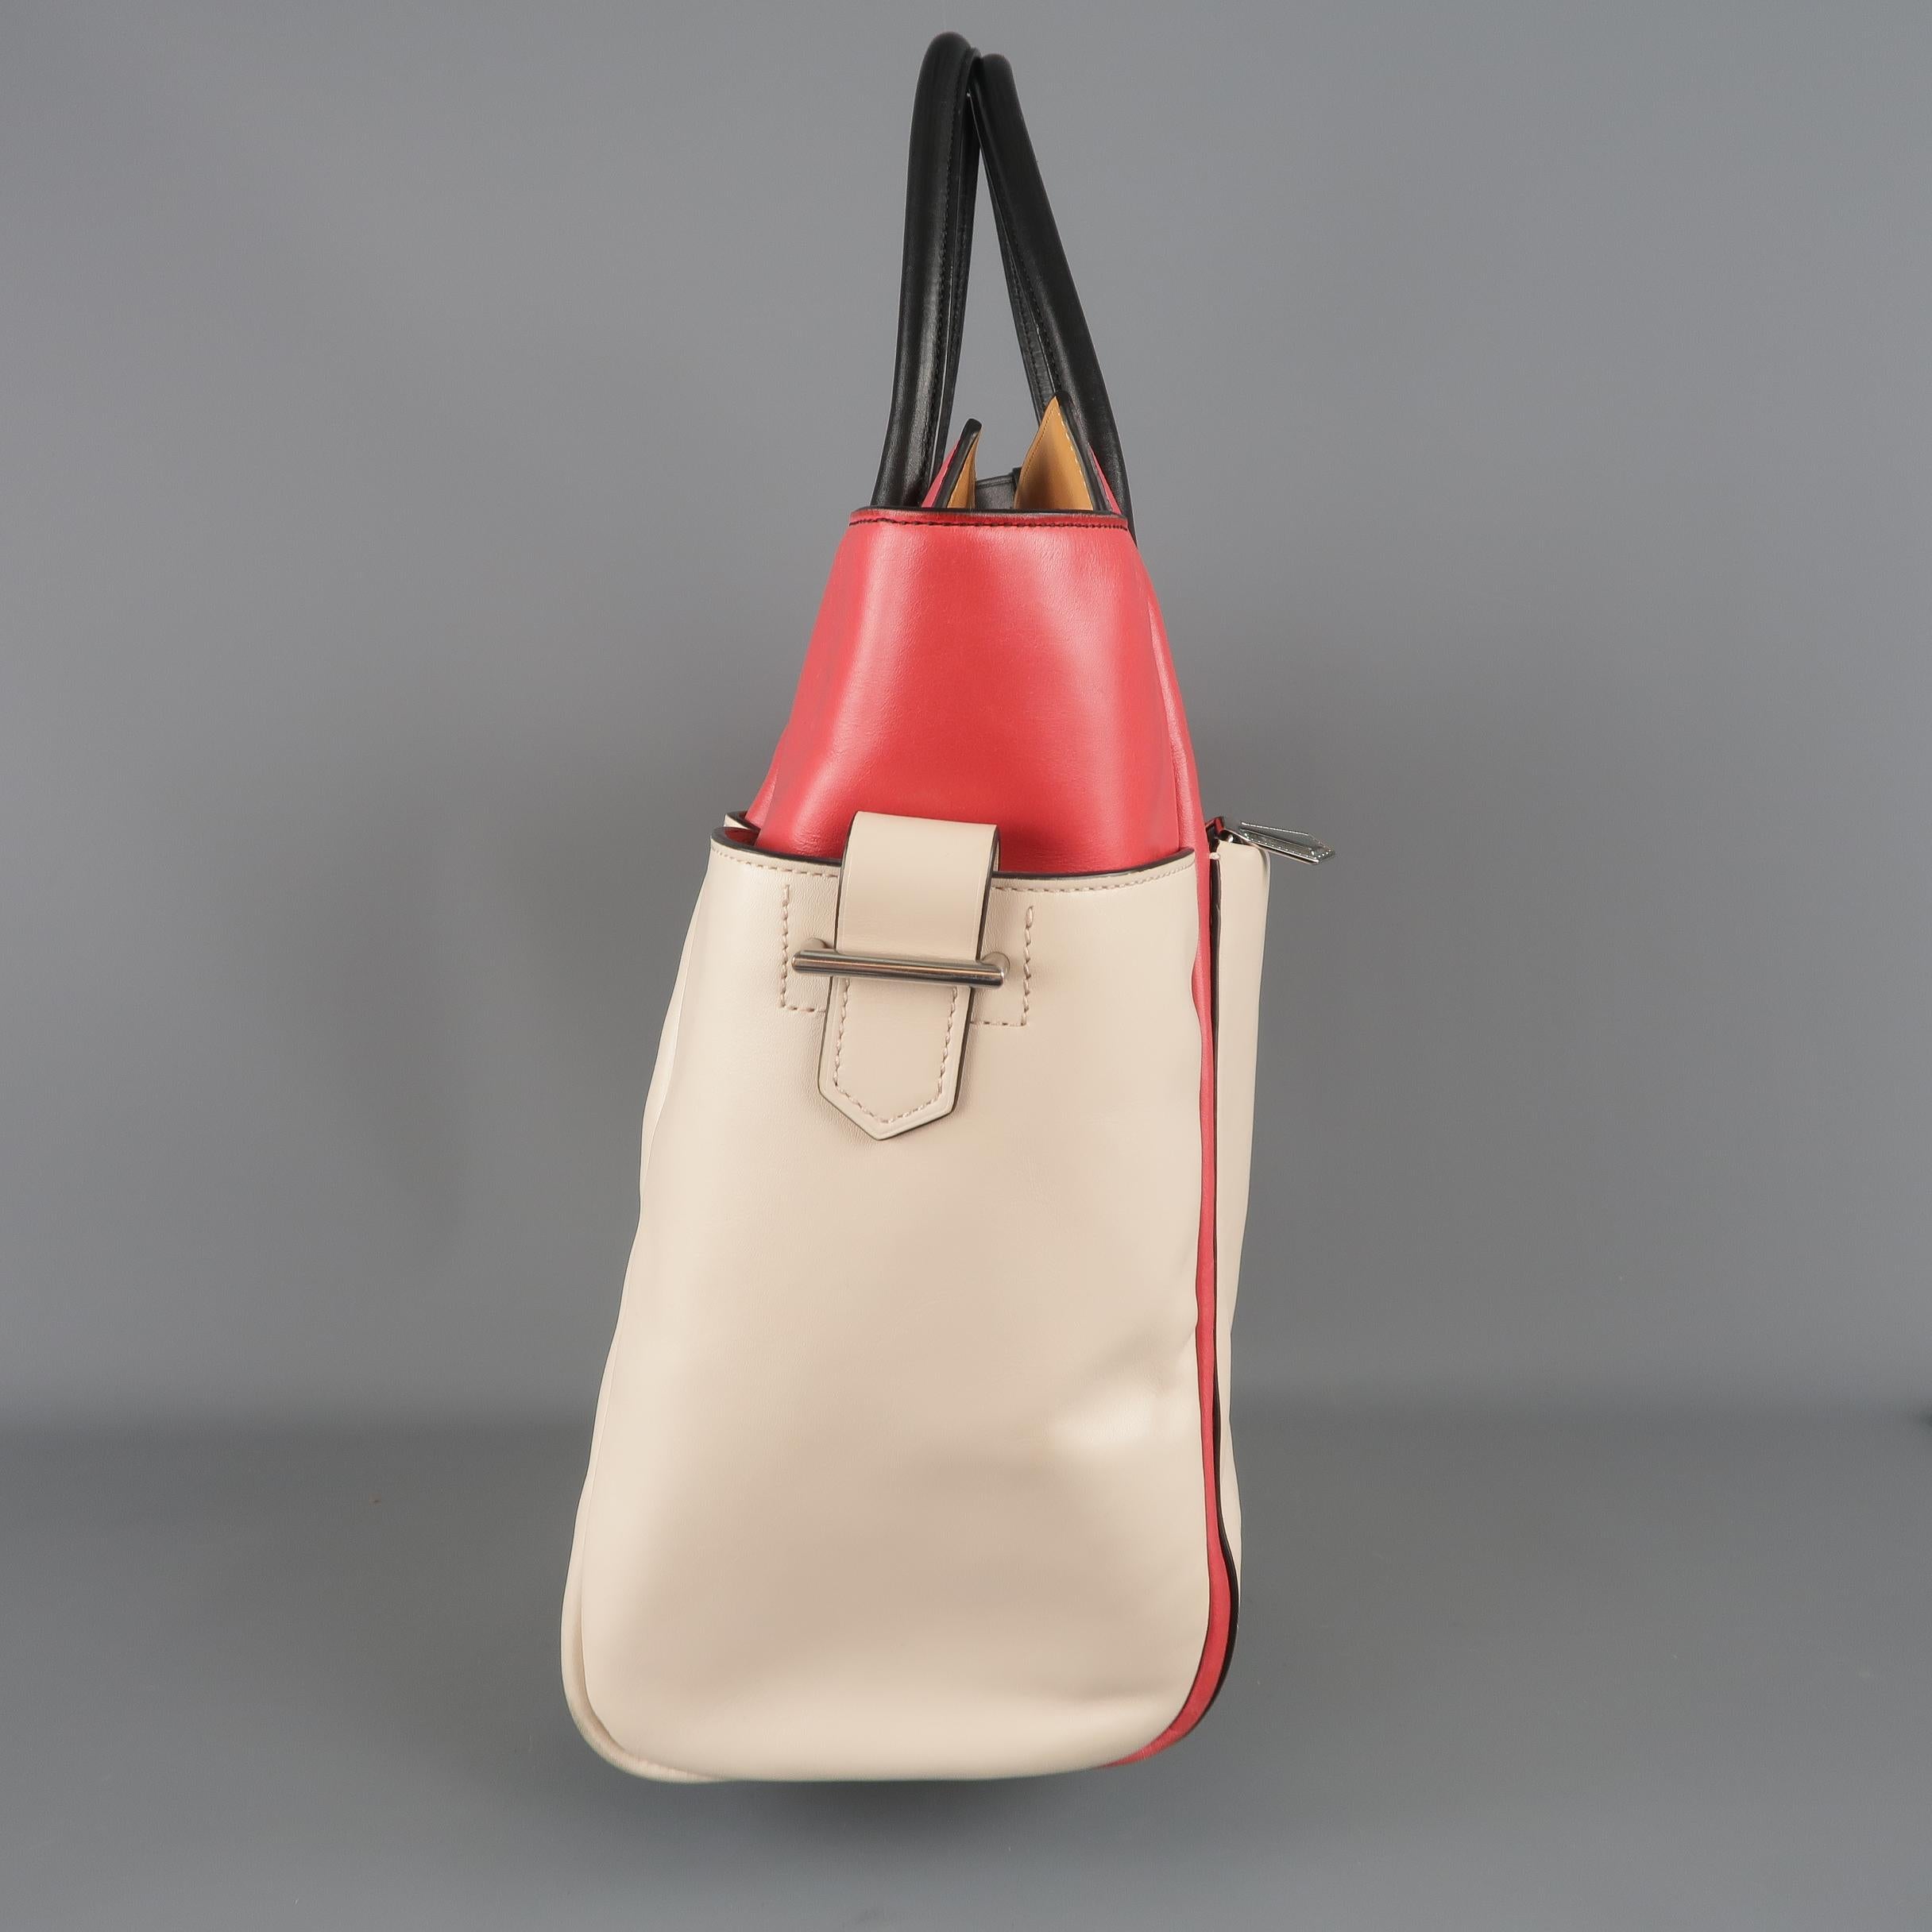 Beige REED KRAKOFF Red Black & Light Pink Leather Tote Handbag Bag